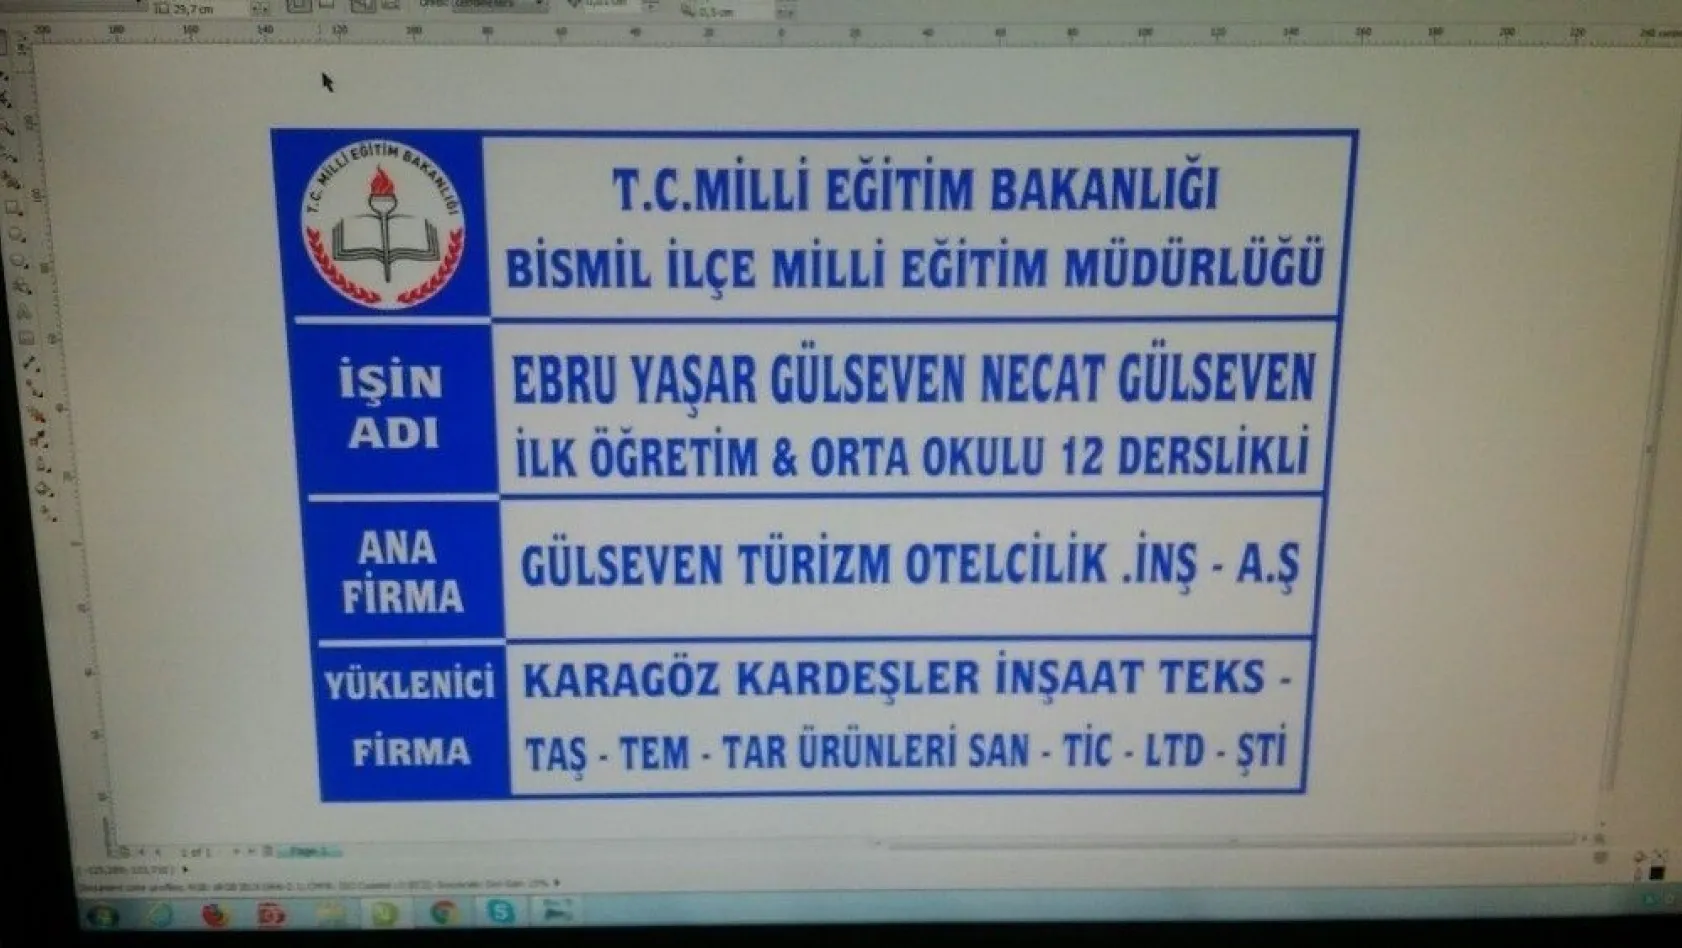 Bismil'de Ebru Yaşar Gülseven Ortaokulu'nun temeli atıldı
